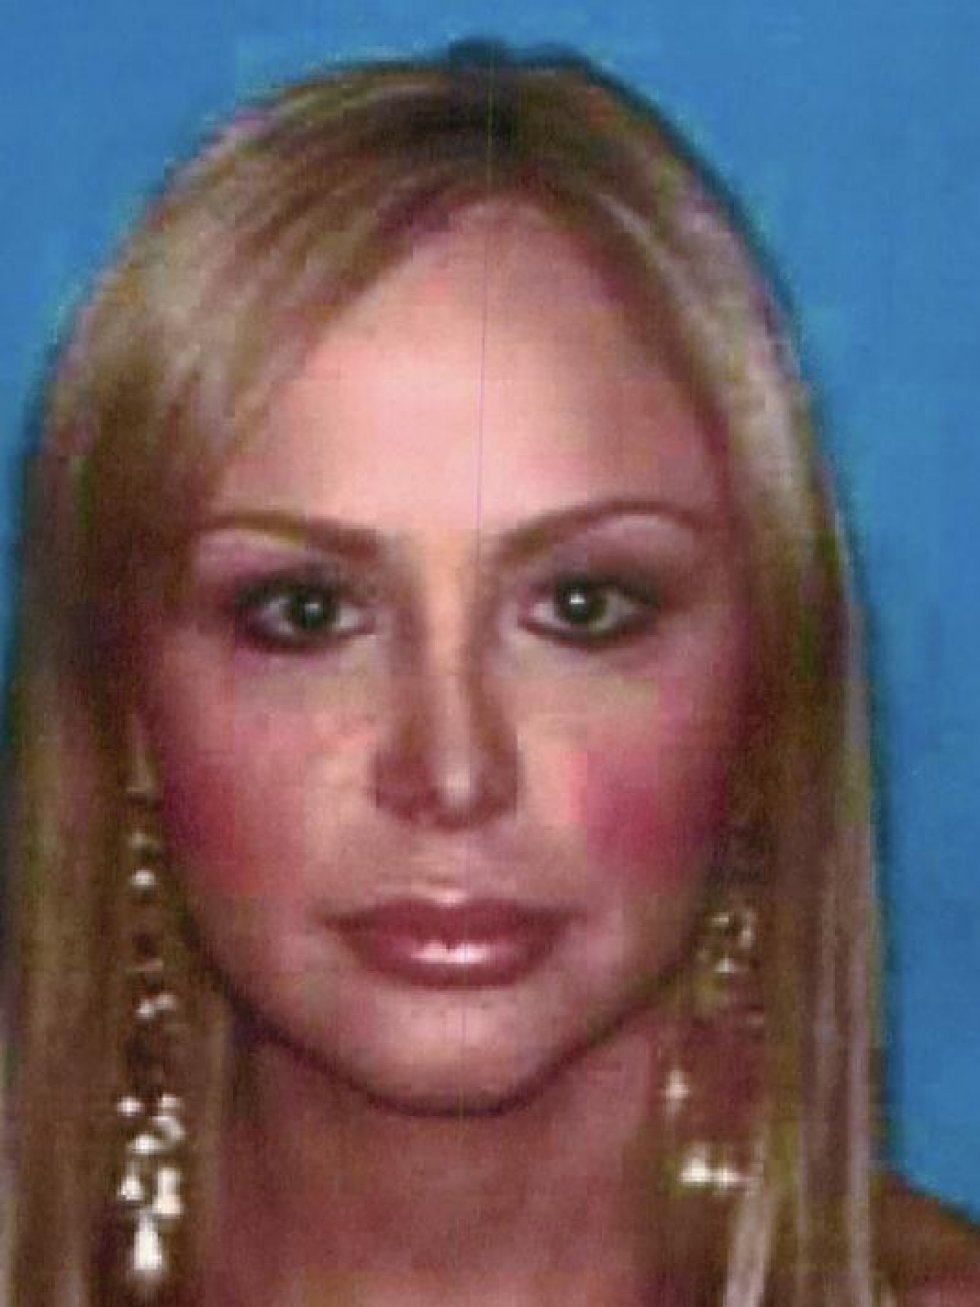 Verdens lækreste drug lord fanget: Mød Ana Marie Hernandez